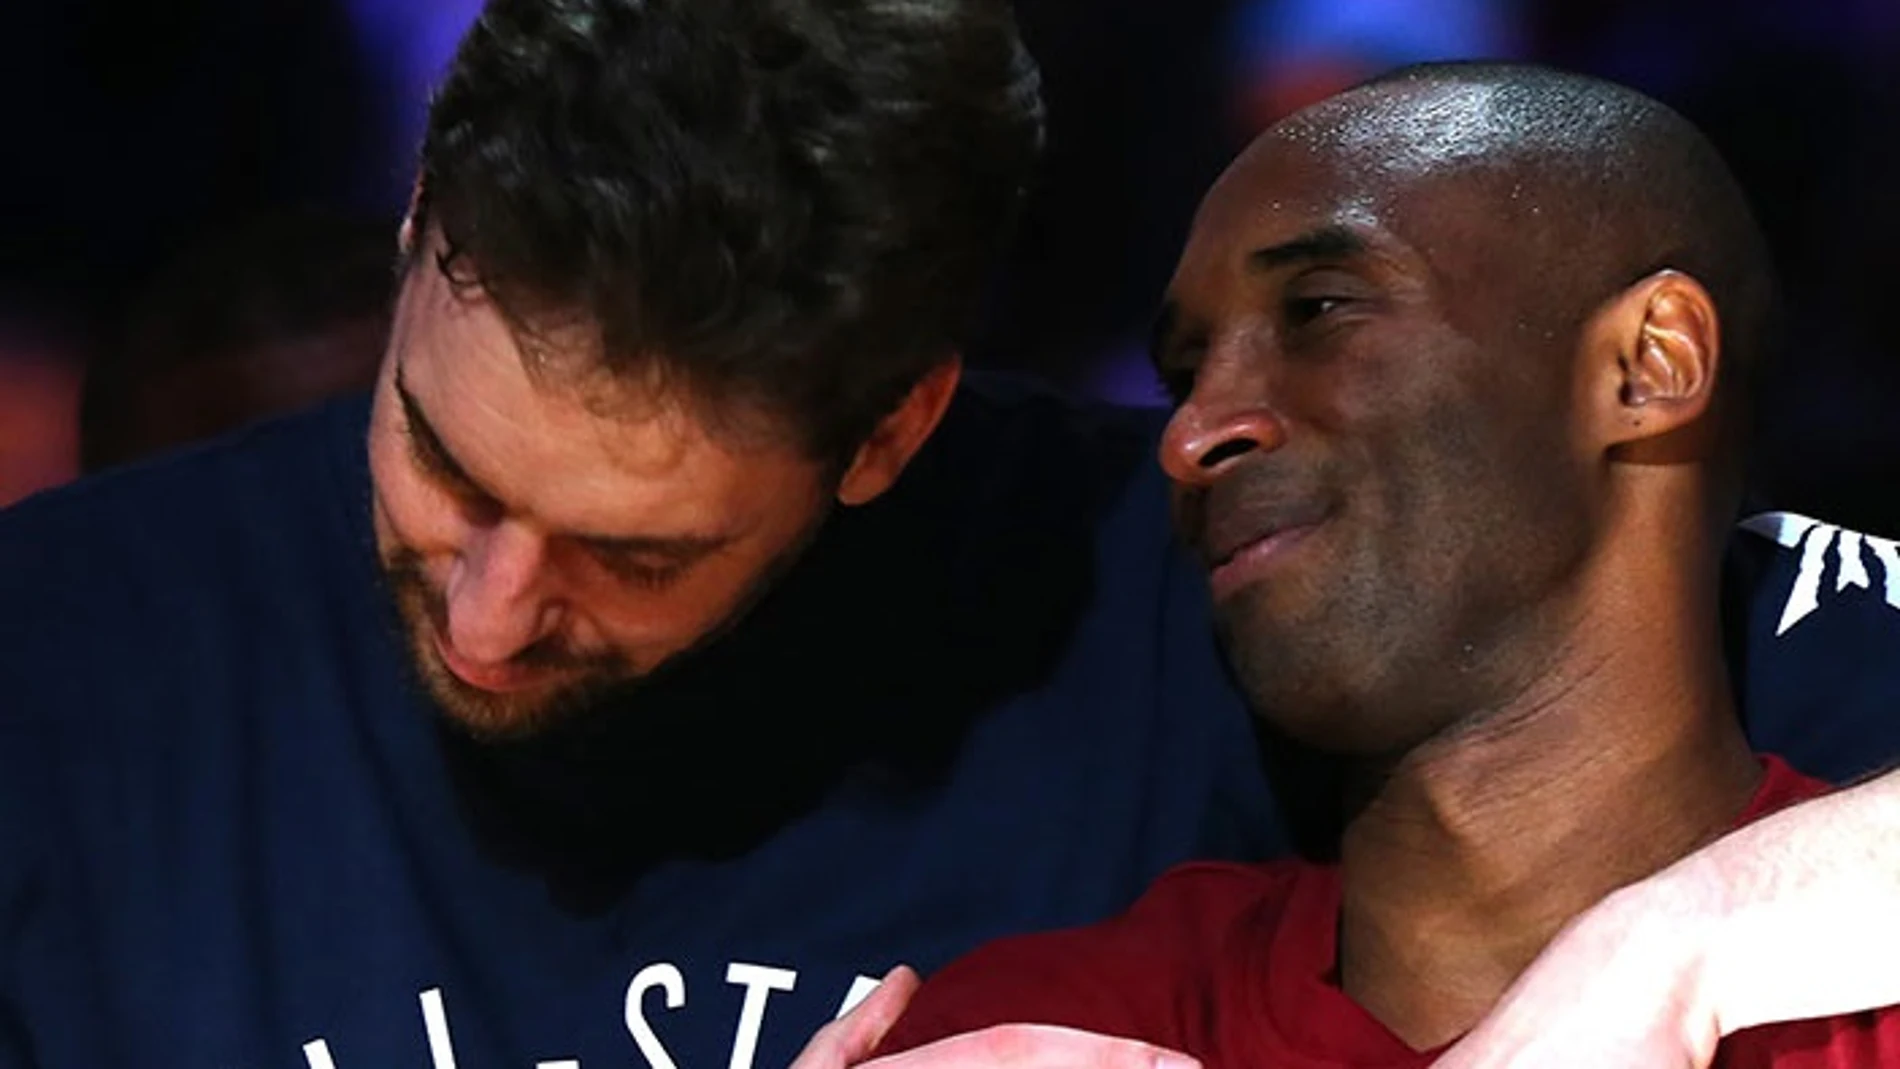 Baloncesto/NBA.- Pau Gasol se muestra "destrozado" por el fallecimiento de Kobe Bryant